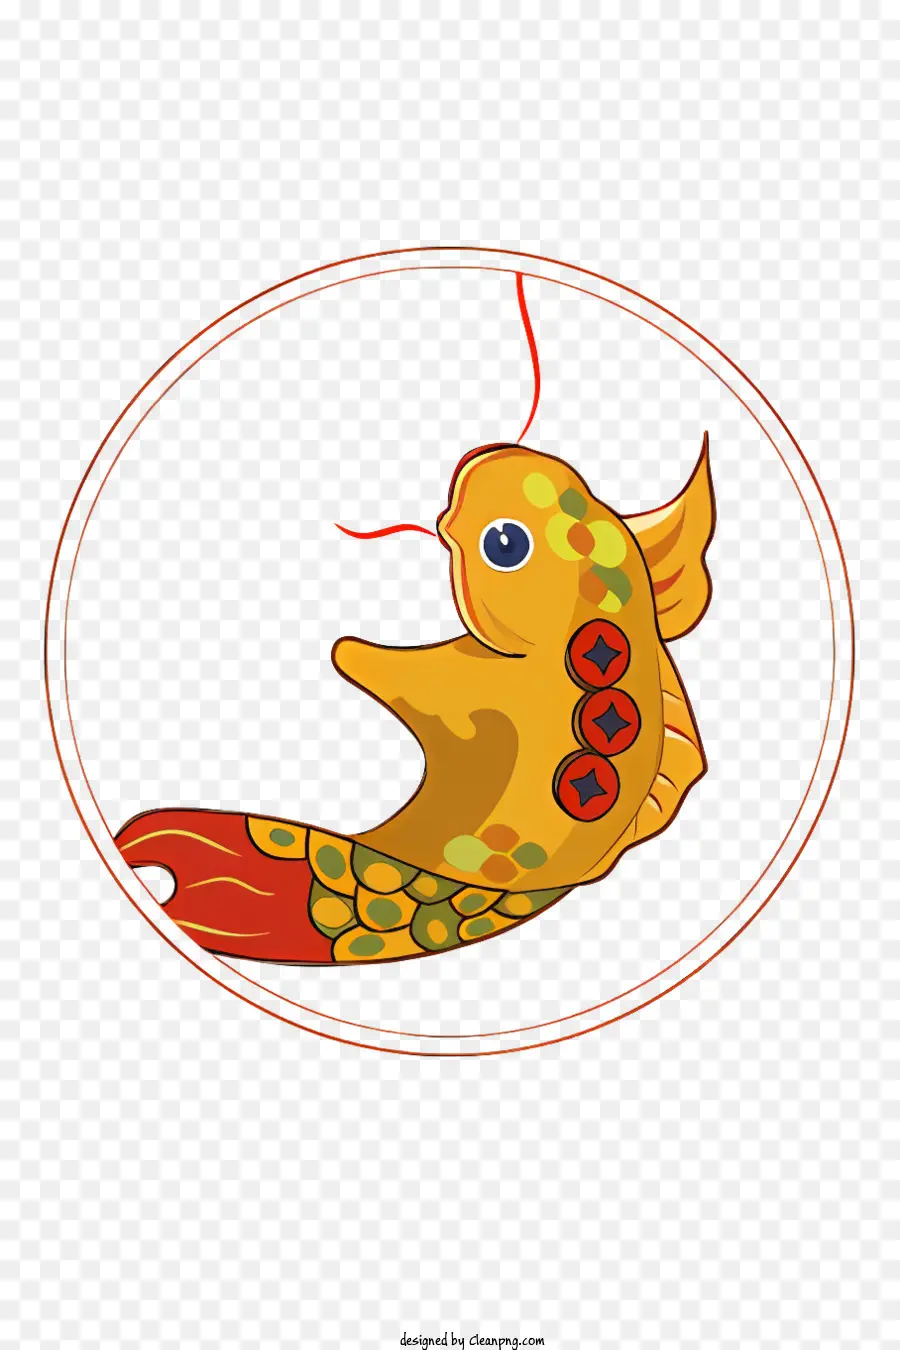 Goldfisch lange gebogene Schwanz rote Flossen schwimmen kreisförmige Fläche - Goldfische mit langem, gebogenem Schwanzschwimmen zentral